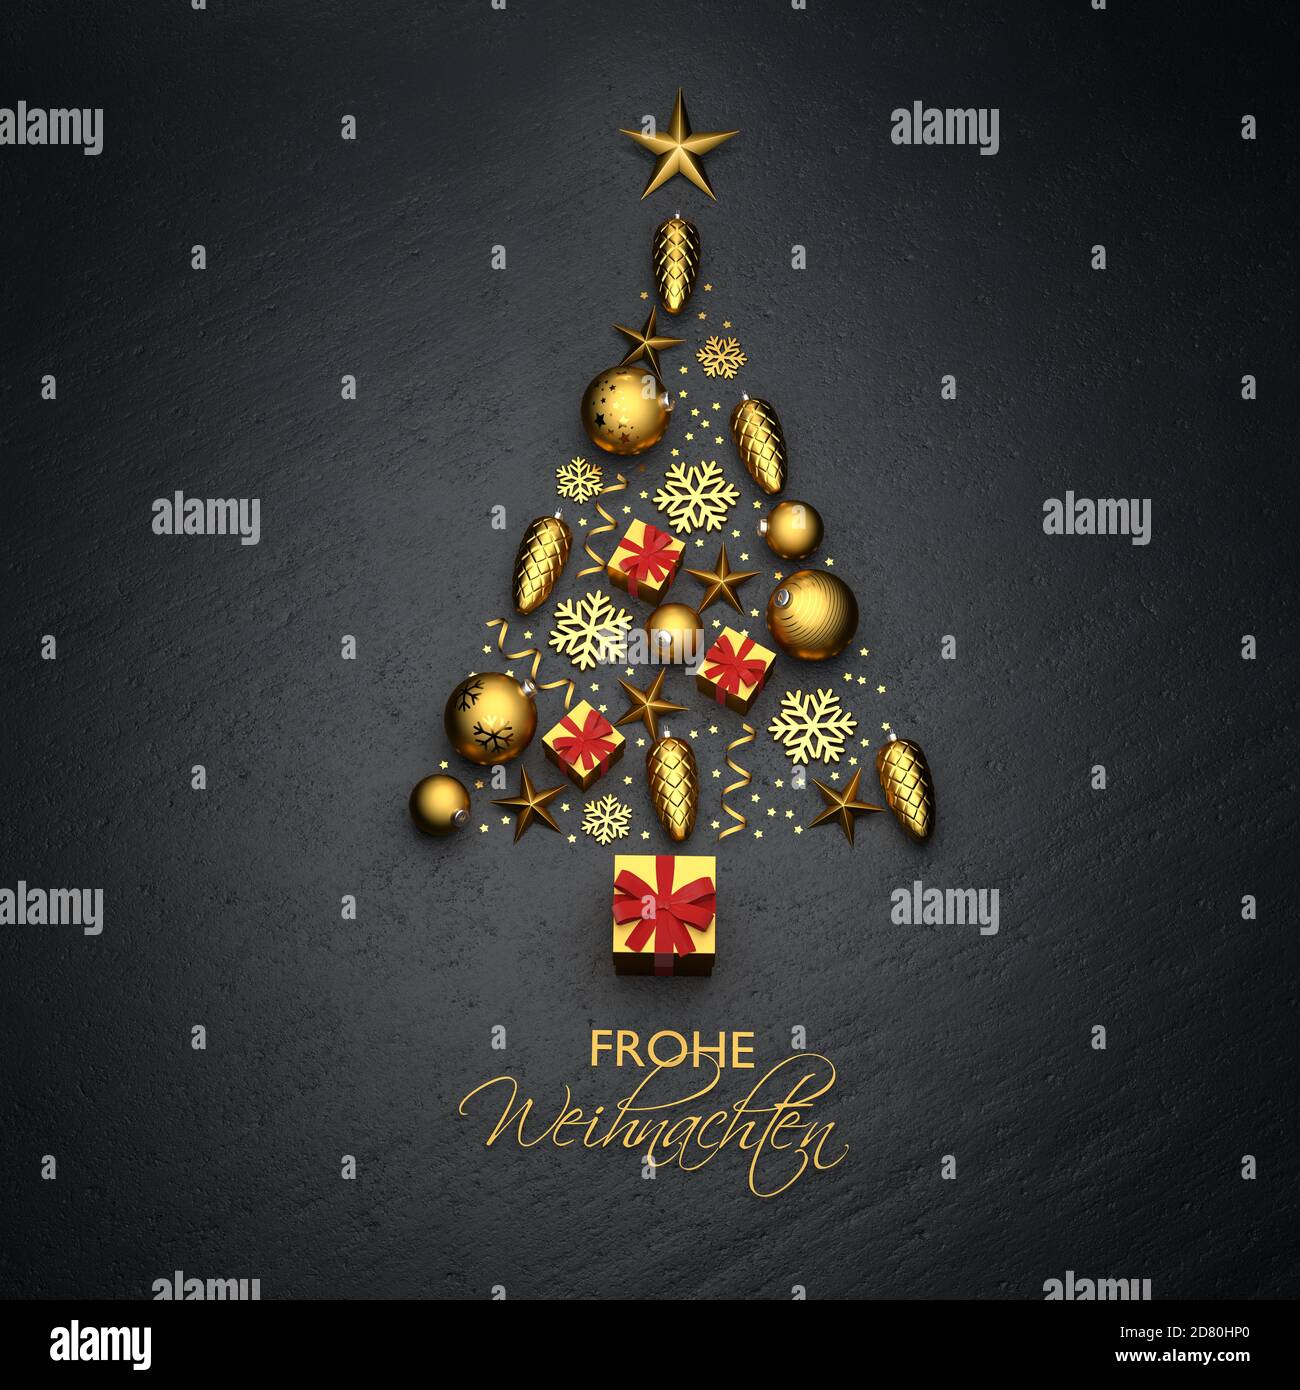 Un arbre de noël fait de décorations de noël dorées sur une assiette en pierre noire. Texte allemand 'Frohe Weihnachten' ('Merry Christmas') en bas. Banque D'Images